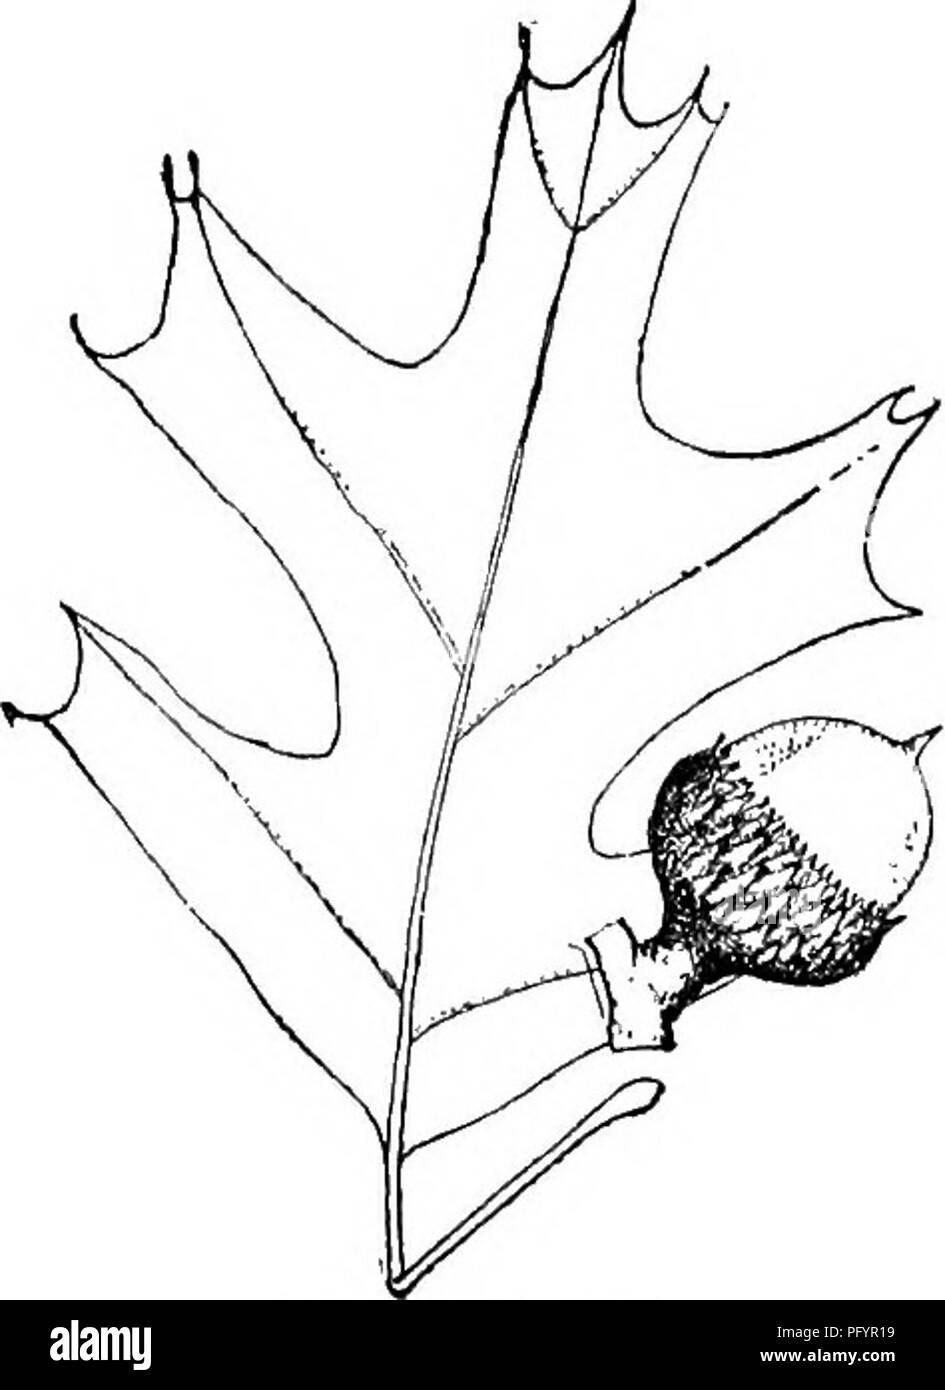 . Gray's nouveau manuel de botanique. Un guide des plantes à fleurs et de fougères de l'Europe centrale et nord-est des États-Unis. La botanique. FAGACEAB (hêtre) de la famille 343. 684. Q. velutina. la moitié des puberulent brun foncé rayé souvent ellipsoïde à subglobuleuses petite (1,2 à l'urne. long) acorn ; feuilles lisses et lus- trous dans l'âge, avec des touffes axillaires sous, devenir pâle ou jaune à l'automne, le bfuwii 5-7 lobes dentés à oblongues grossièrement somme- mit ; écorce gris, lisse et la dose, ou dans l'âge légèrement fissuré, jaune clair à l'intérieur. - L'argile ou du gravier, s. Mich, à l'Homme. et la. - Un moi- dium-size Banque D'Images